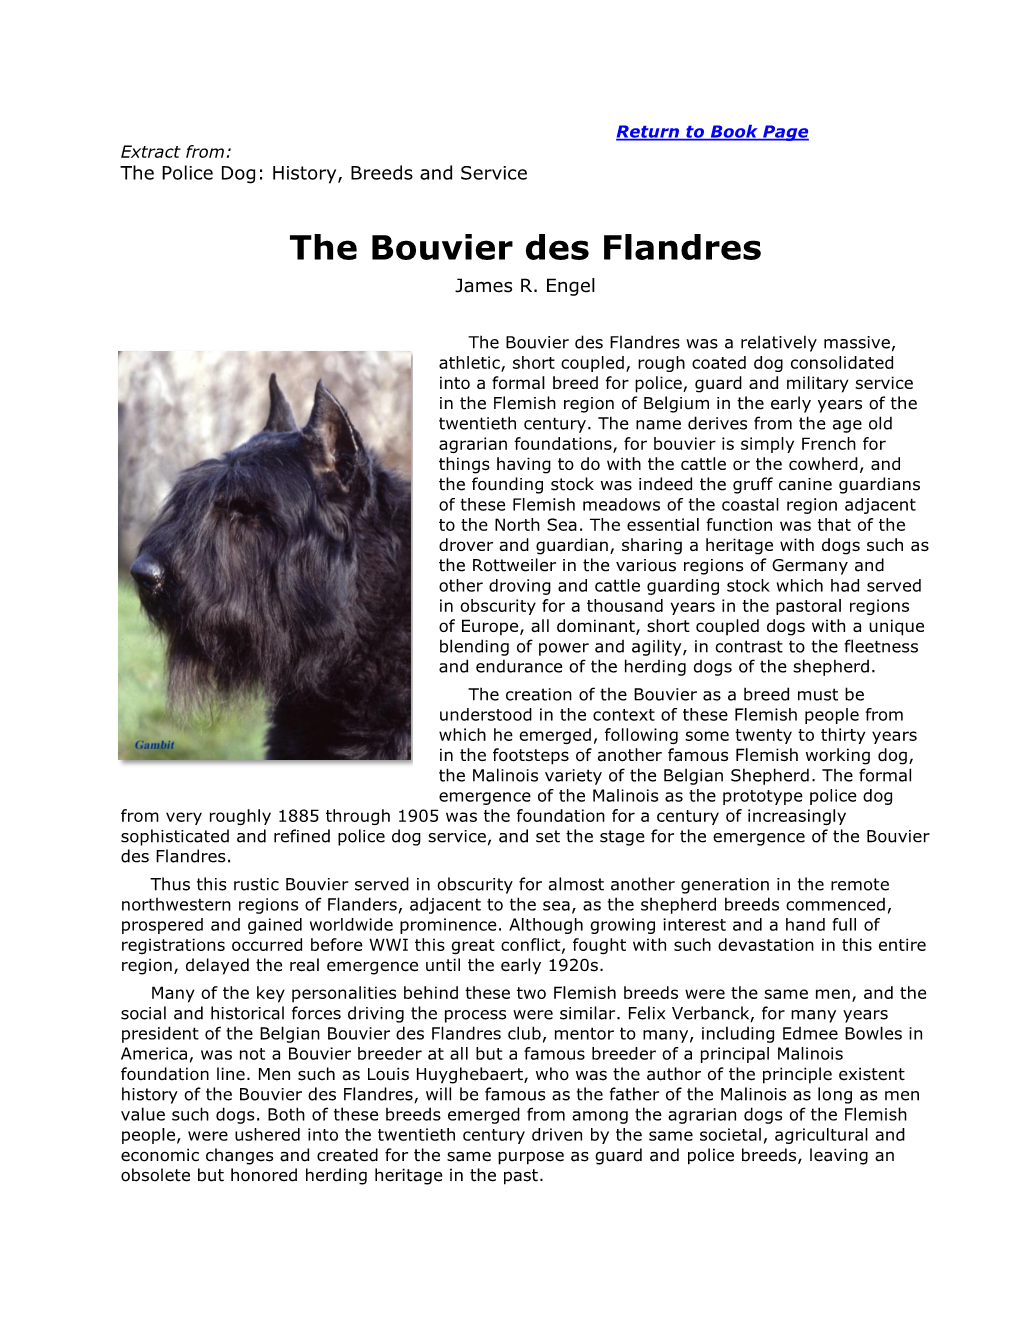 The Bouvier Des Flandres James R